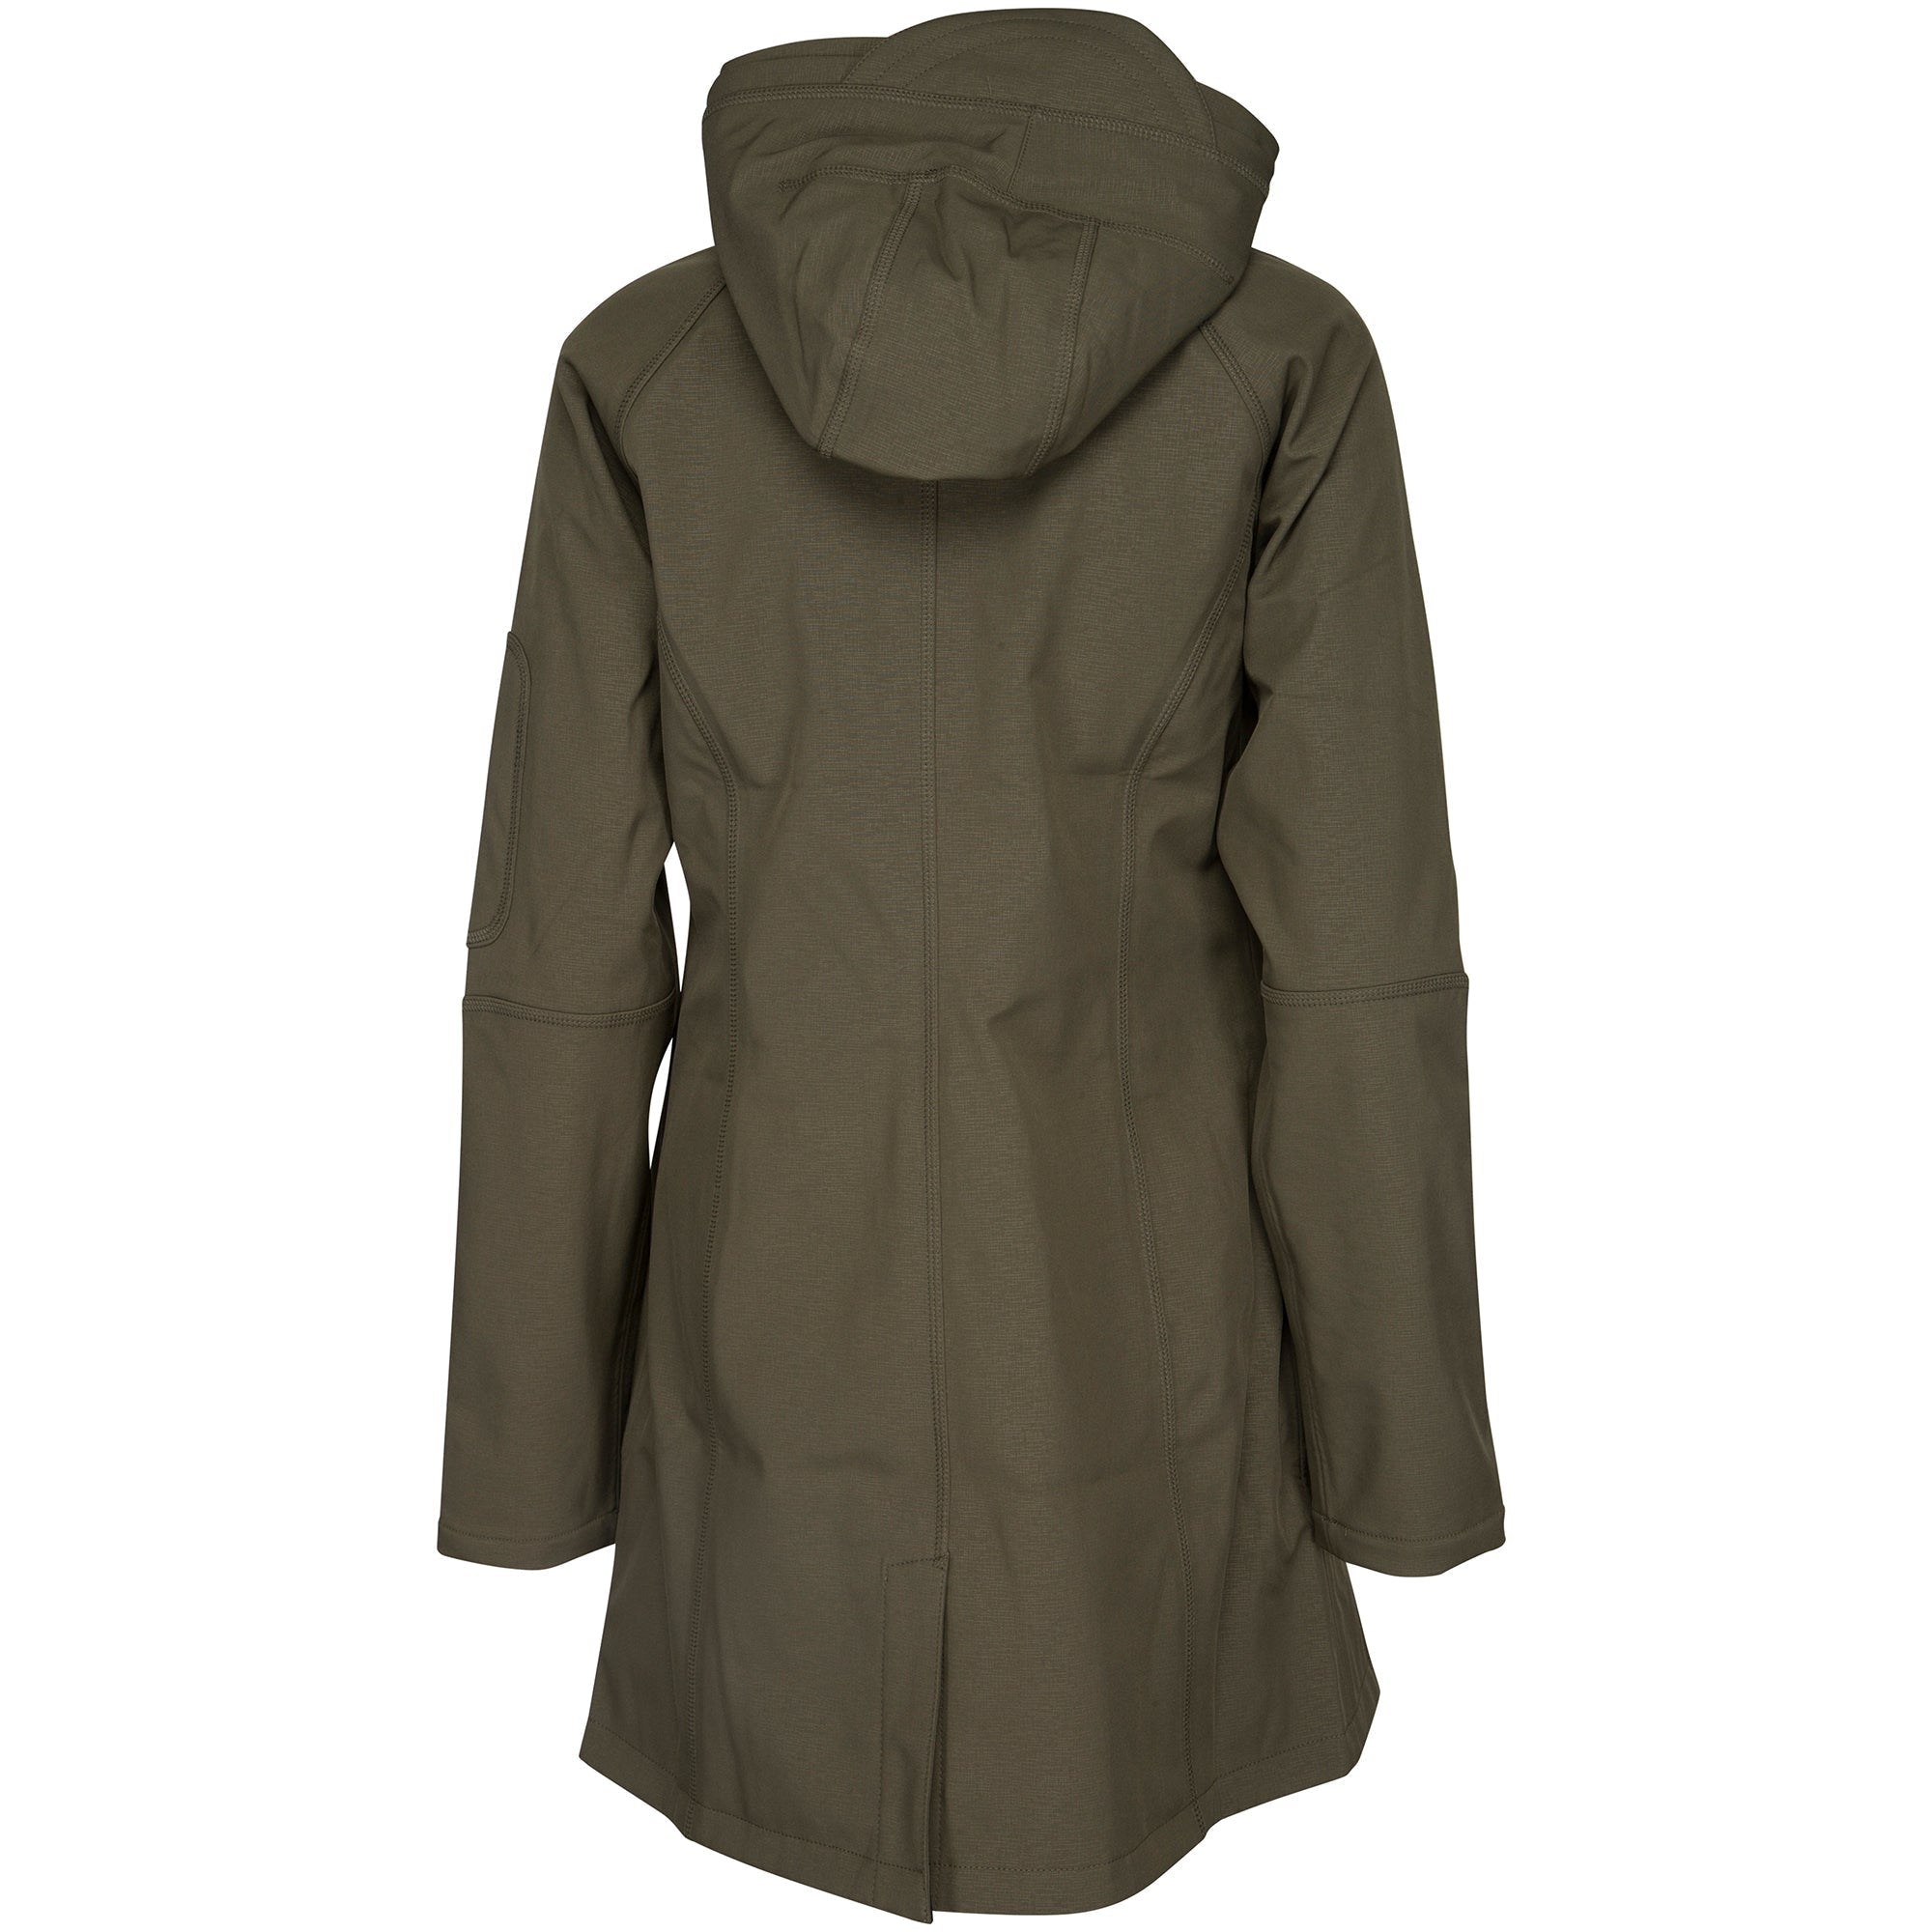 Raincoat RAIN37 - 410 Army | Army